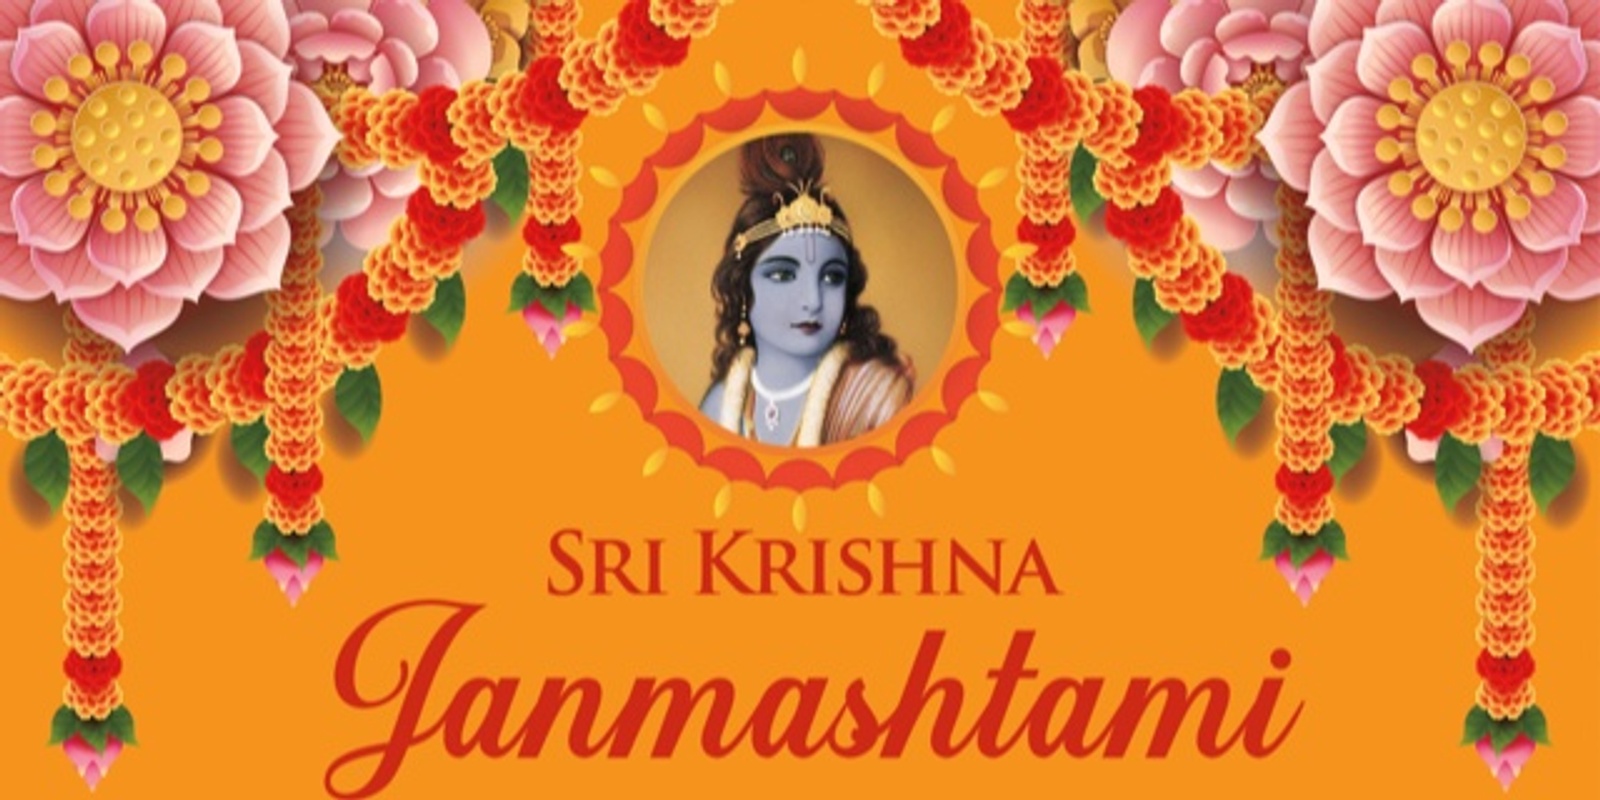 Banner image for Sri Krishna Janmashtami Celebration